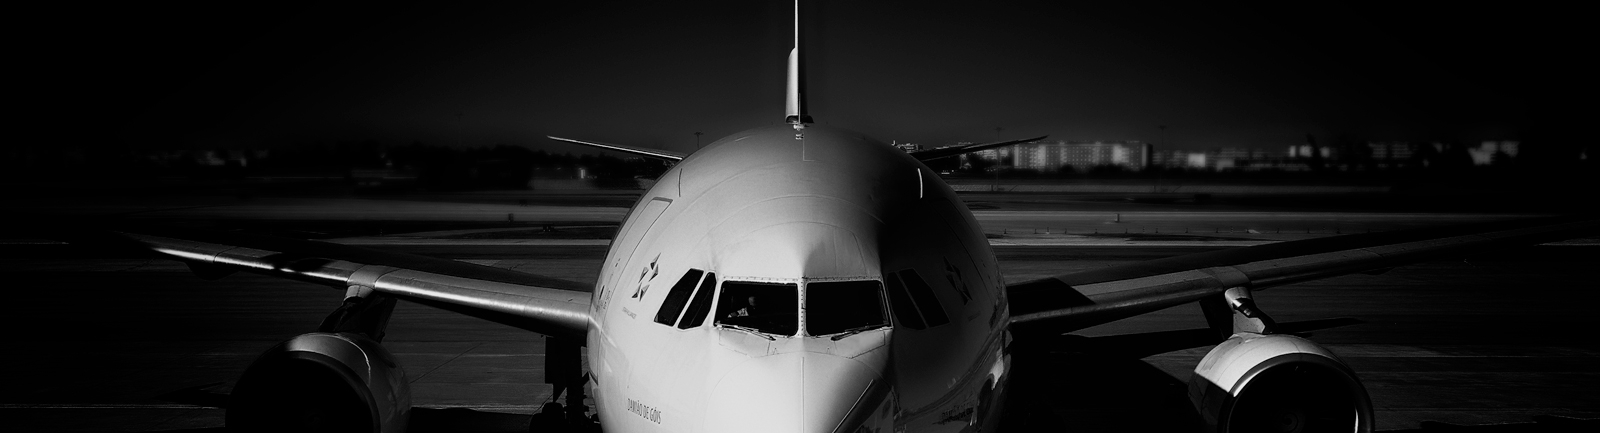 CS-TOI - Airbus A330-200